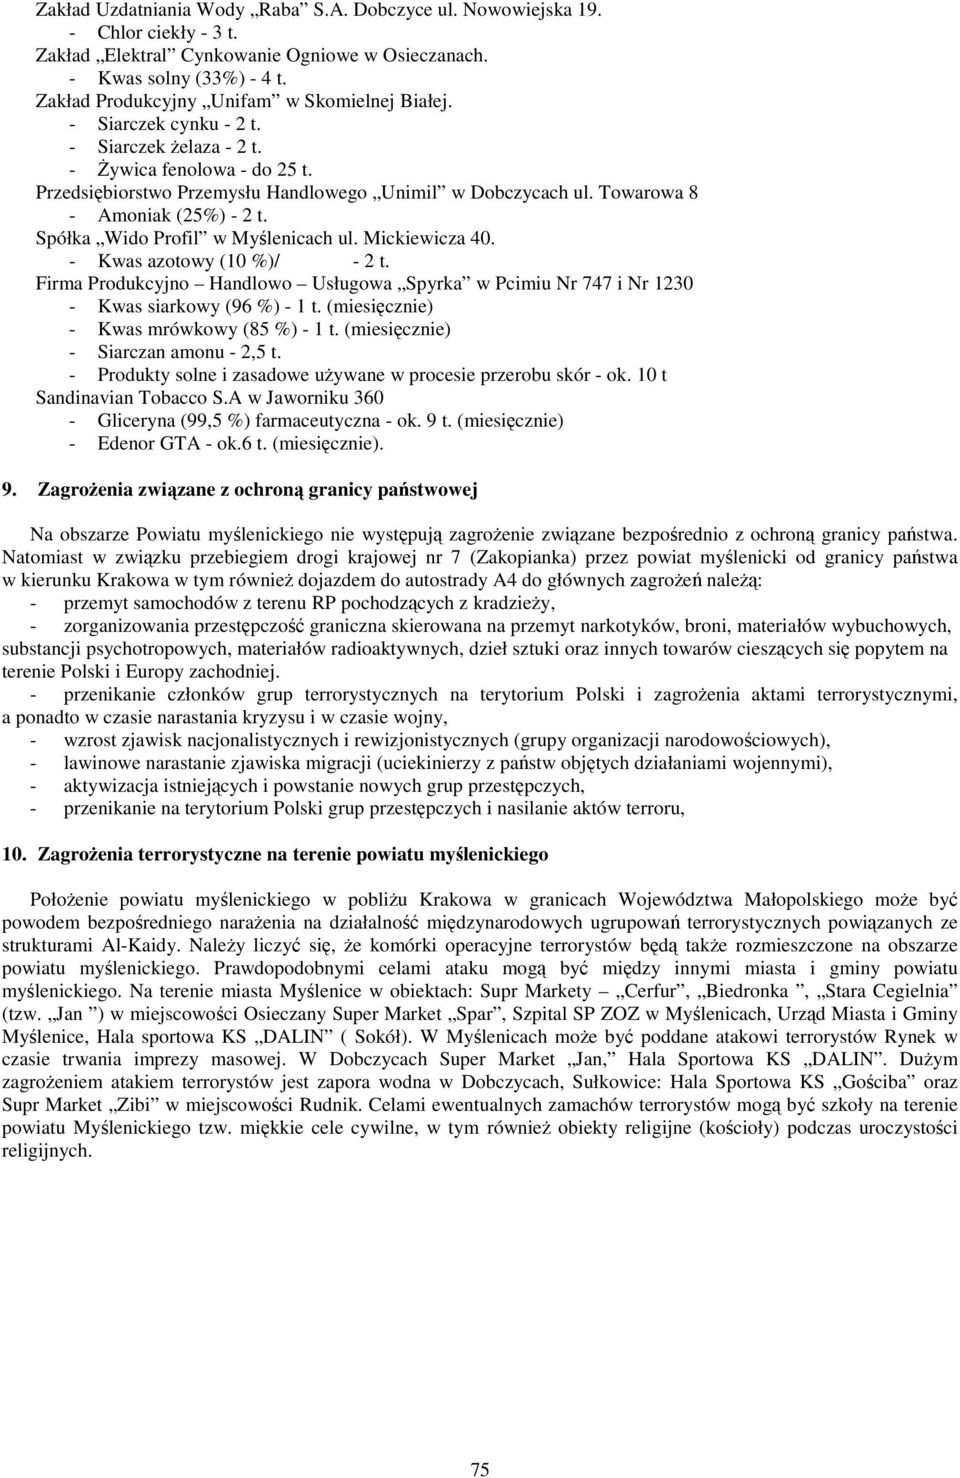 Towarowa 8 - Amoniak (25%) - 2 t. Spółka Wido Profil w Myślenicach ul. Mickiewicza 40. - Kwas azotowy (10 %)/ - 2 t.